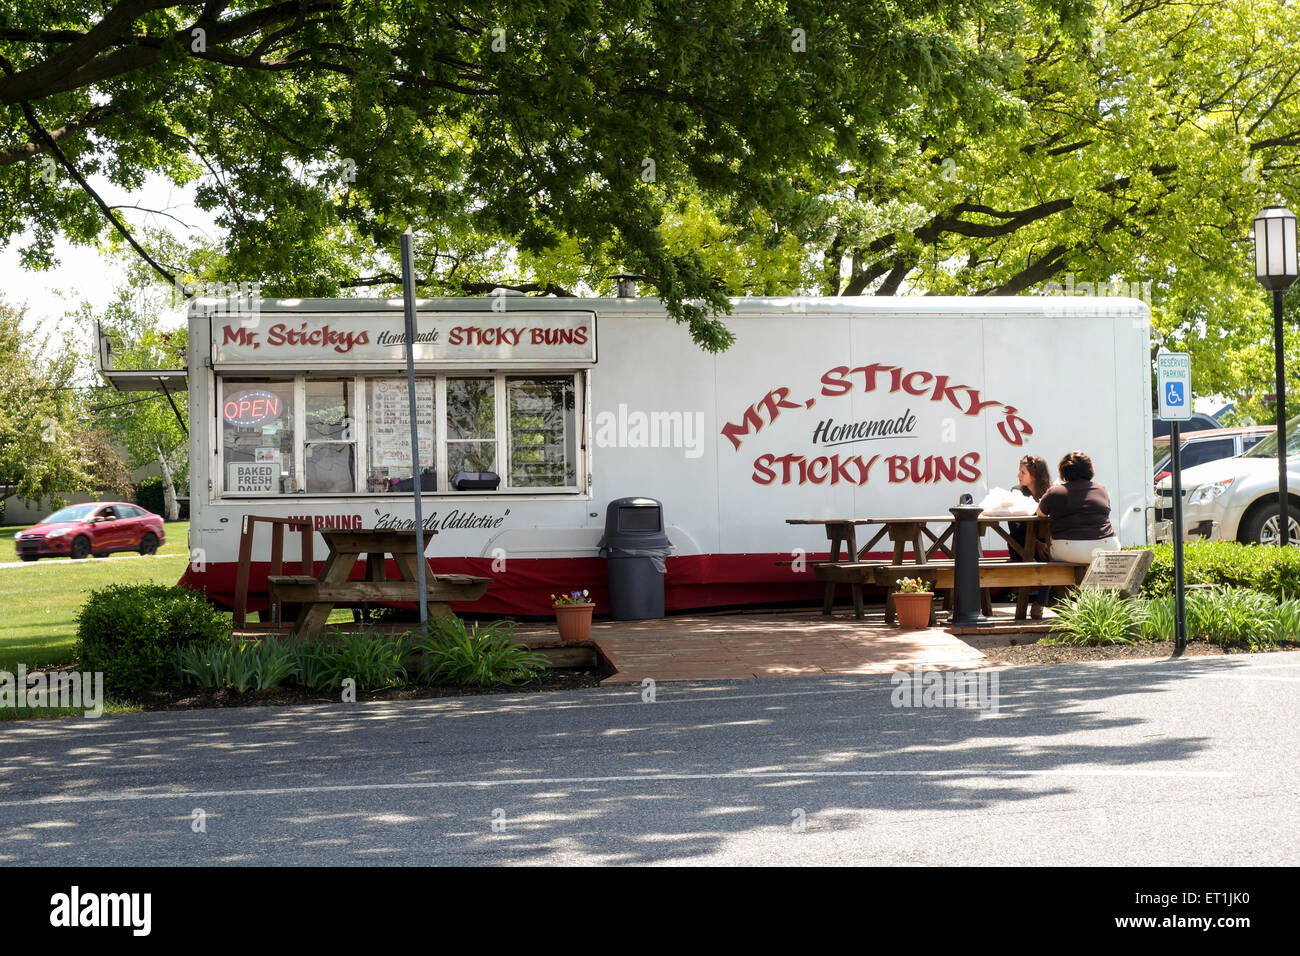 Deux personnes sur une terrasse à Sticky buns, camion alimentaire dans la région de Lancaster, Pennsylvanie, USA. Banque D'Images